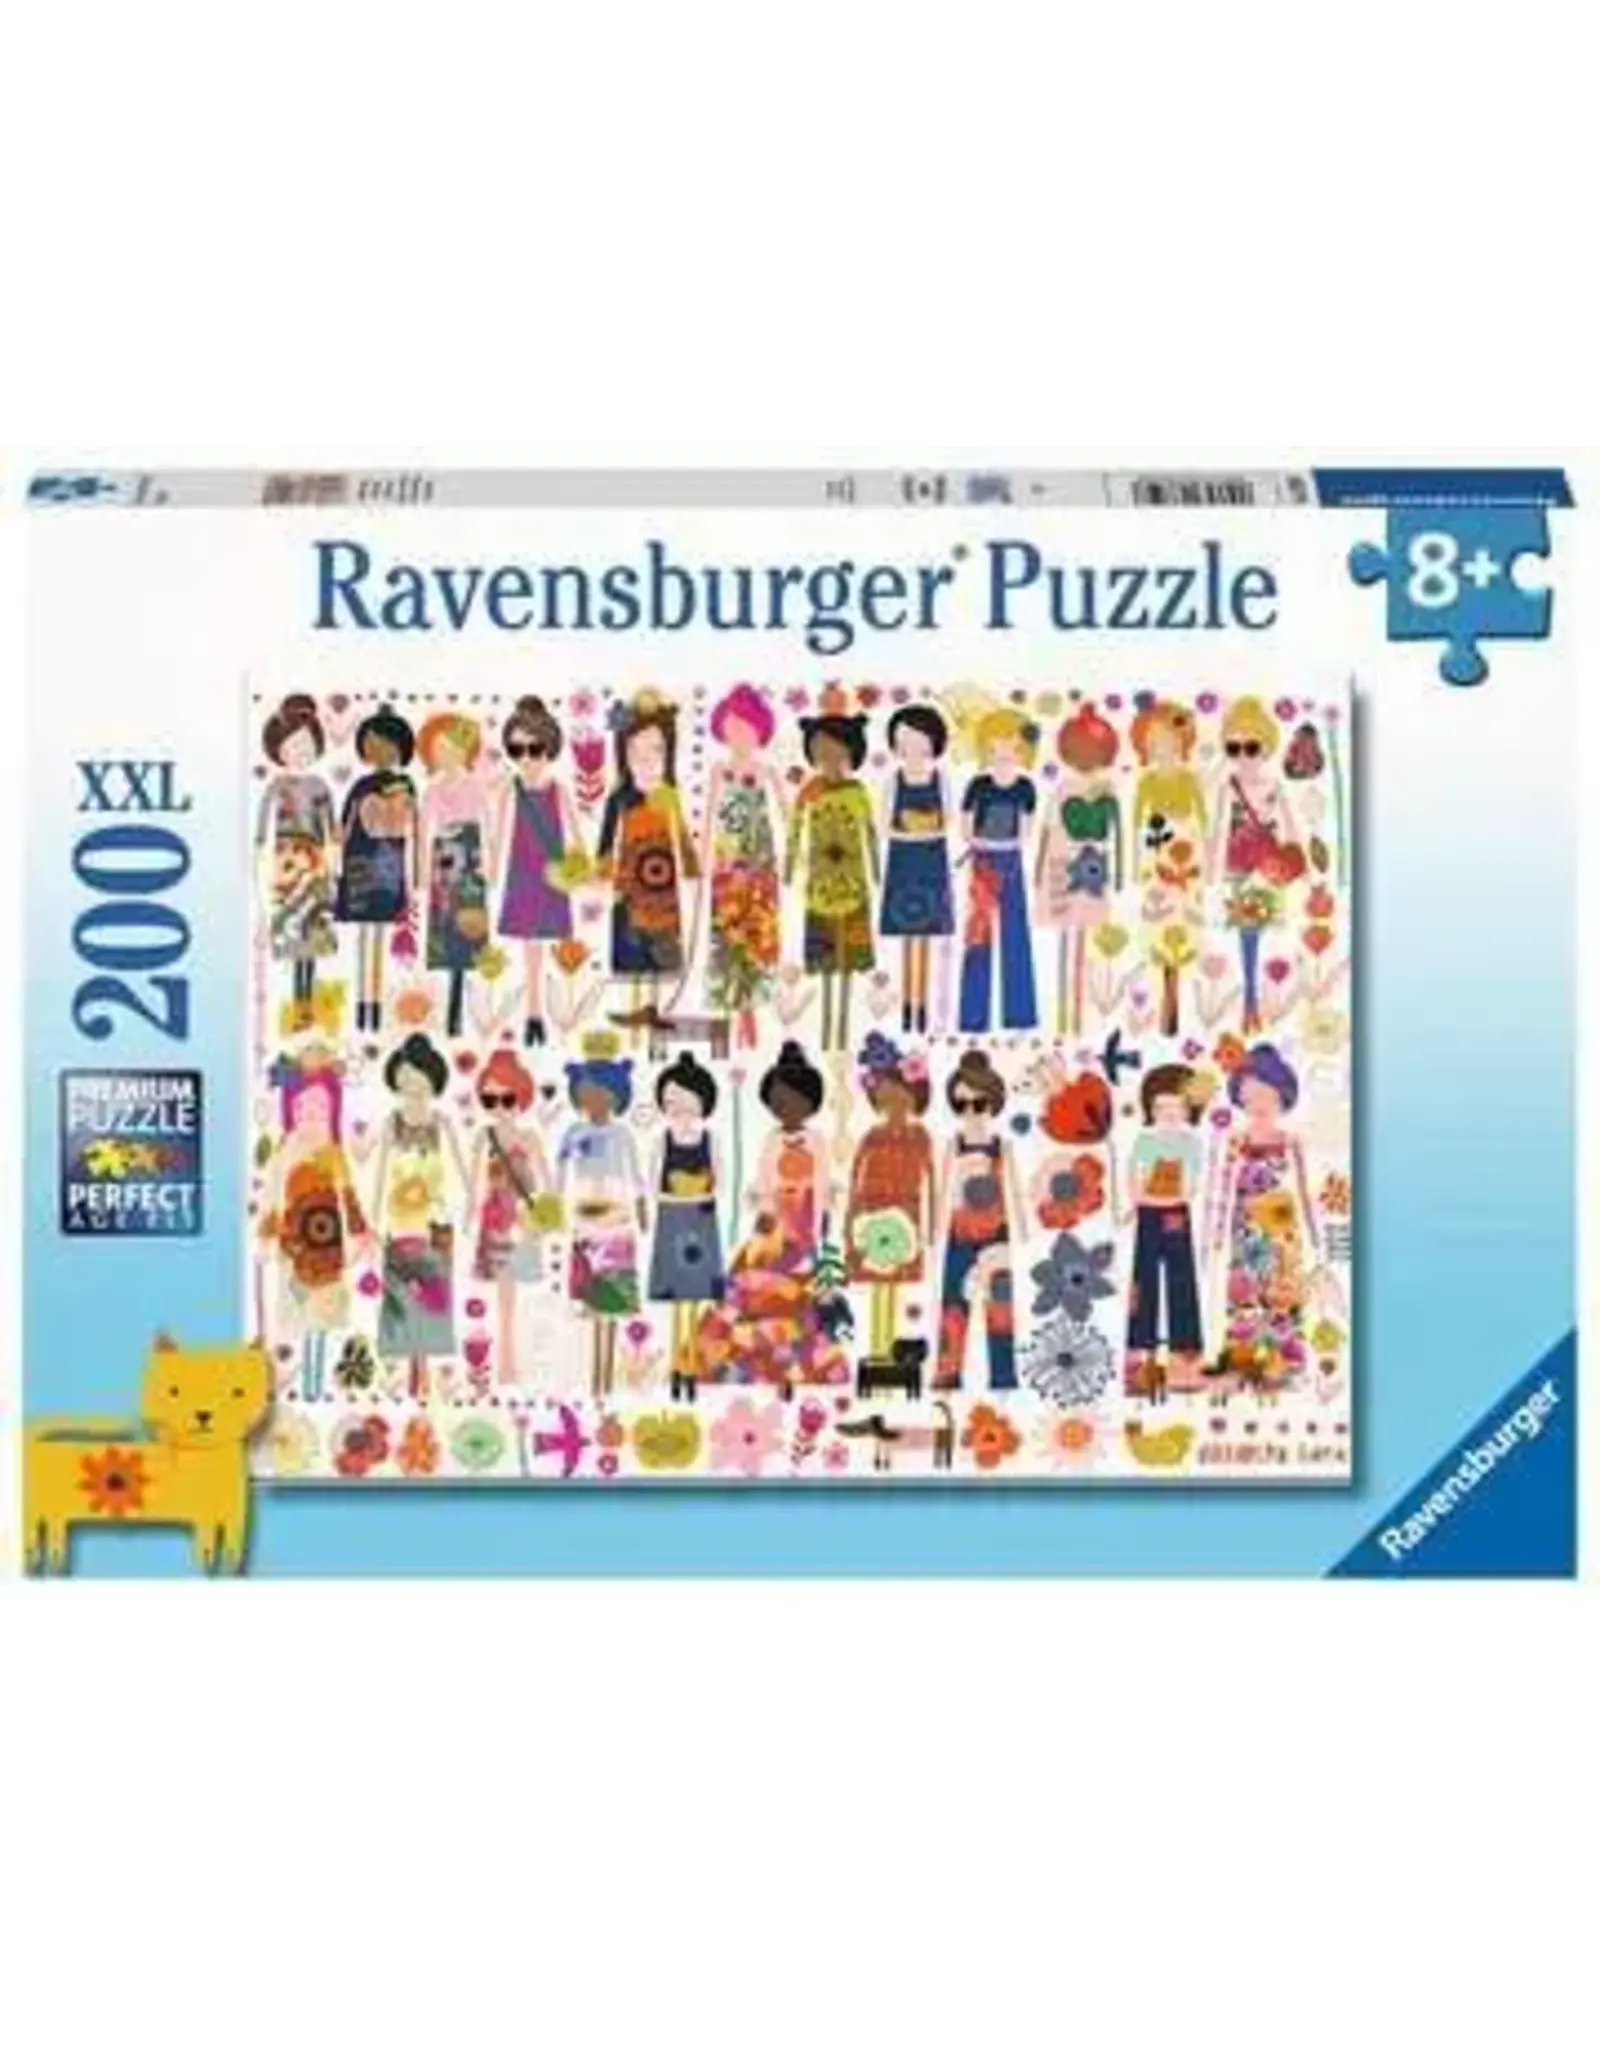 Ravensburger Flowers & Friends 200 Piece Puzzle